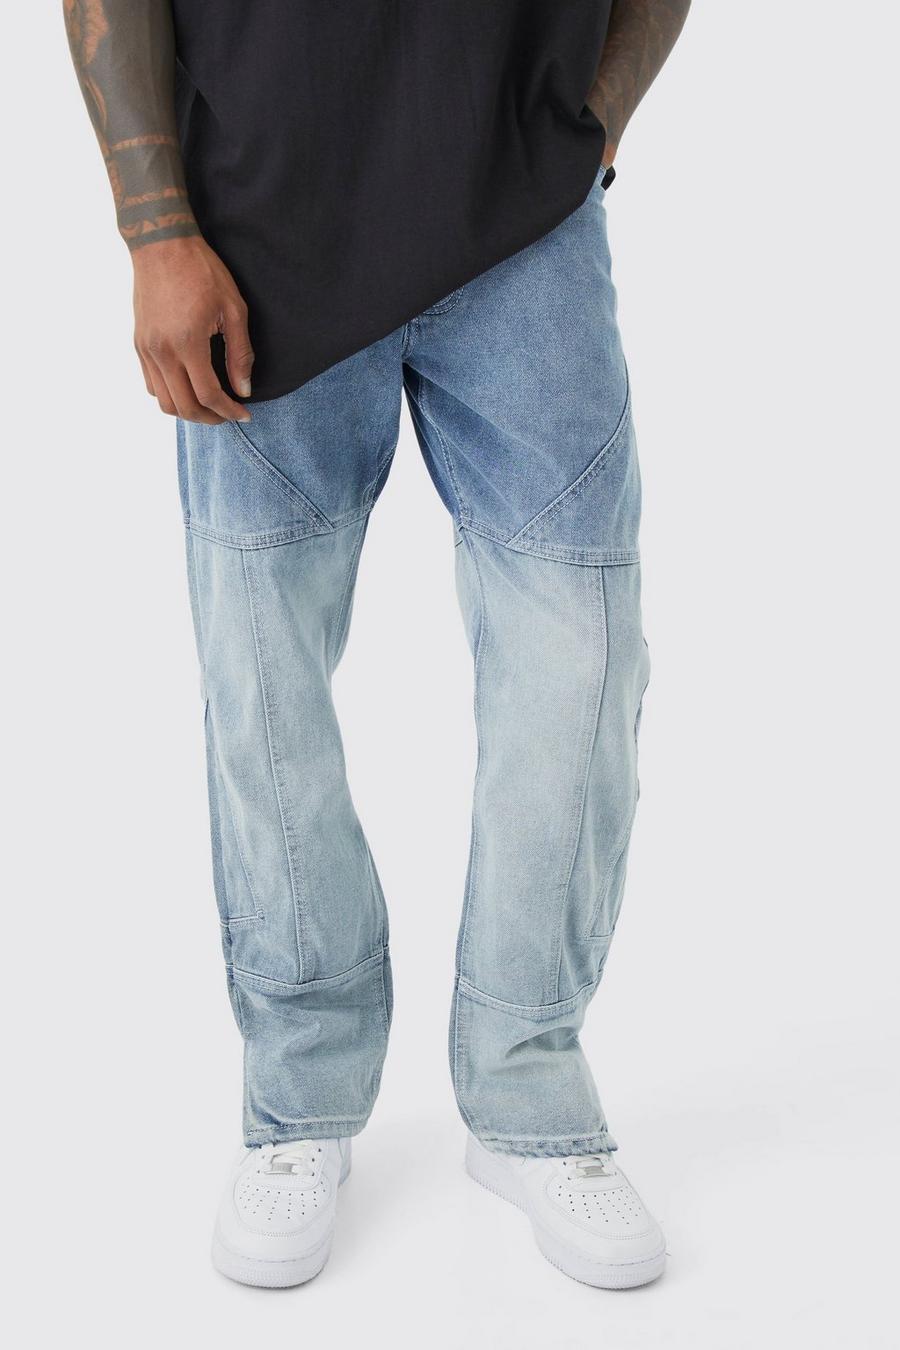 Gerade Jeans mit Farbverlauf und Reißverschluss-Saum, Antique wash bleu